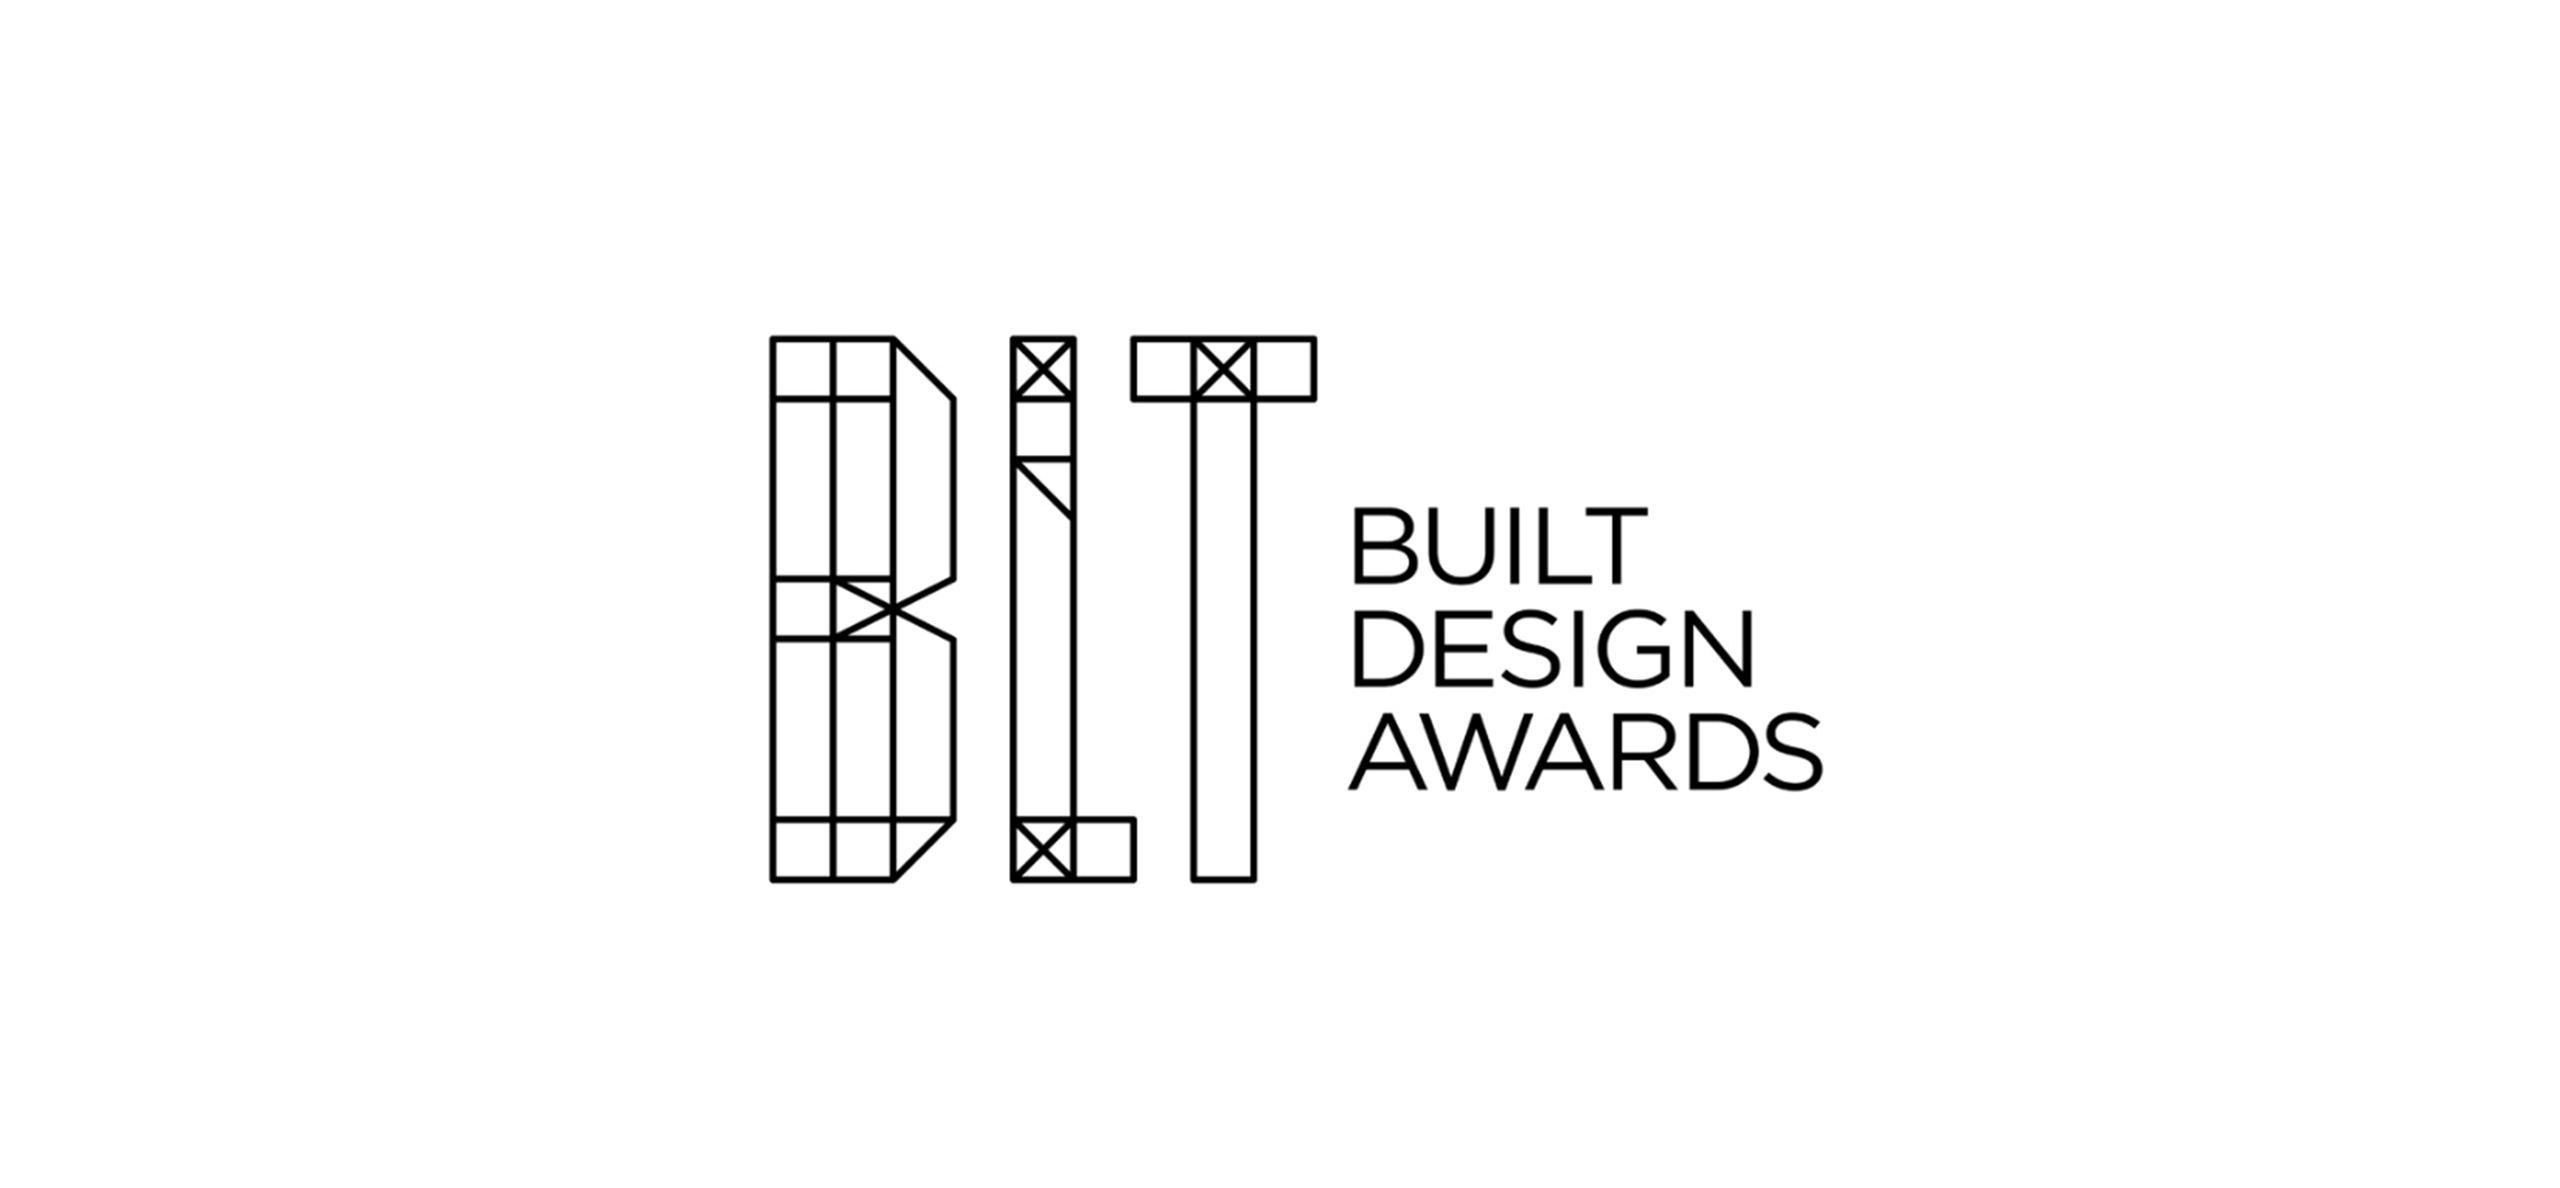 فراخوان جوایز طراحی BLT